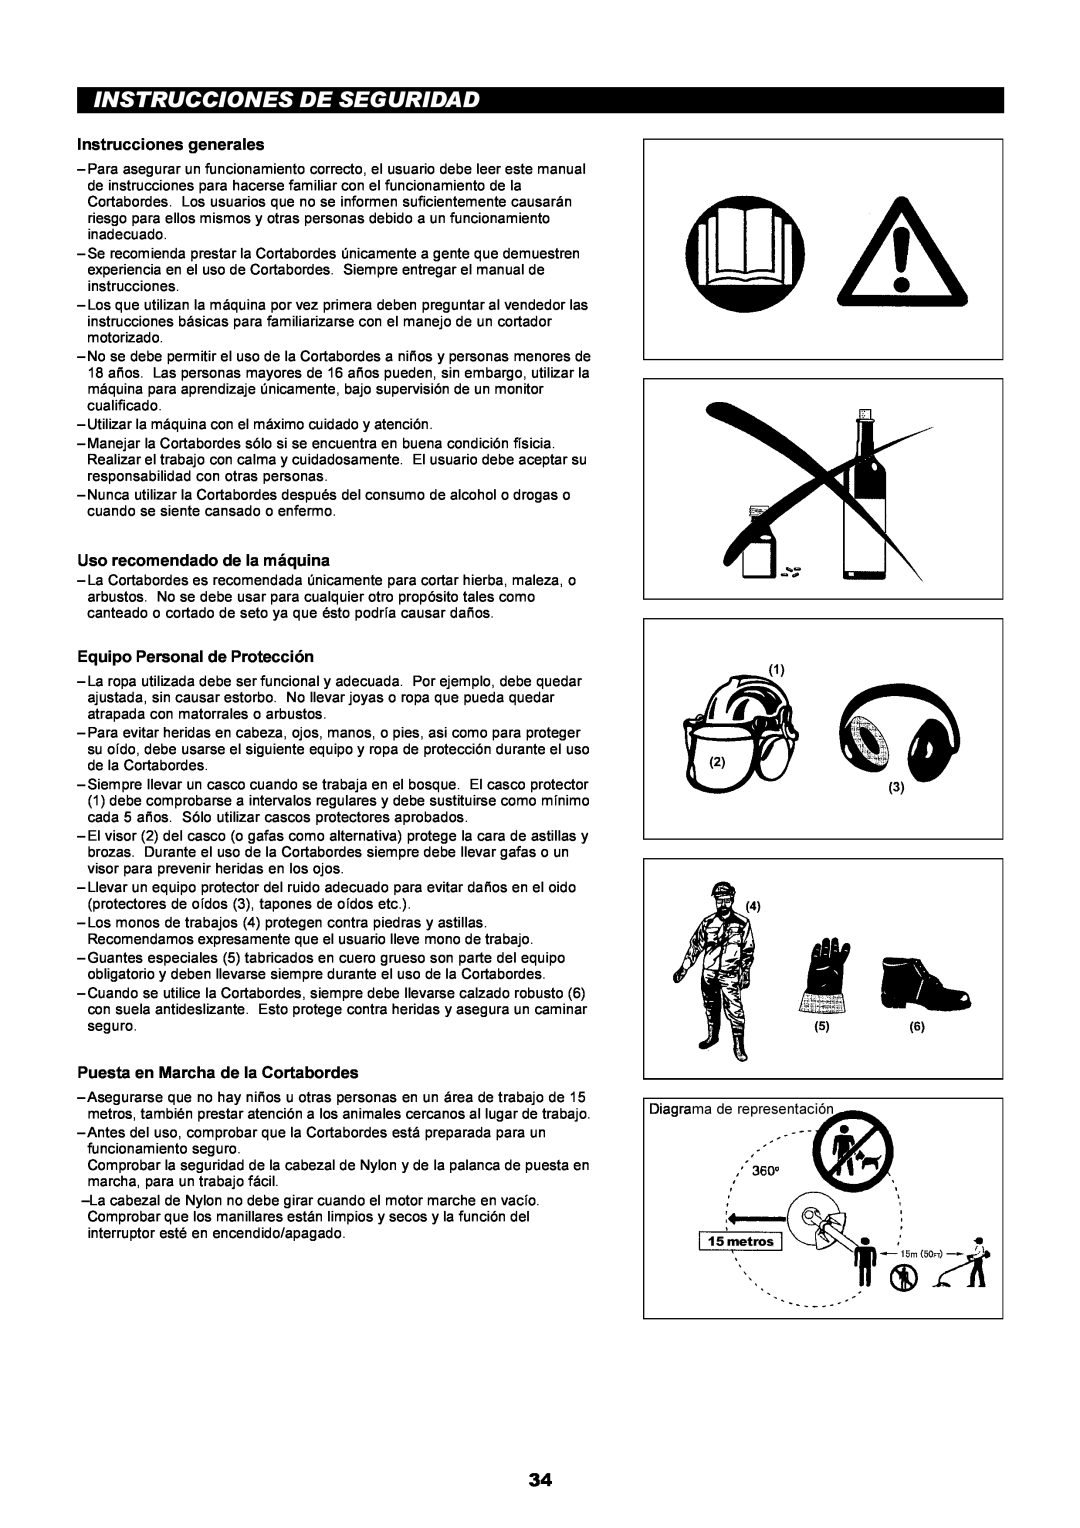 Makita LT-210 instruction manual Instrucciones De Seguridad, Instrucciones generales, Uso recomendado de la máquina 